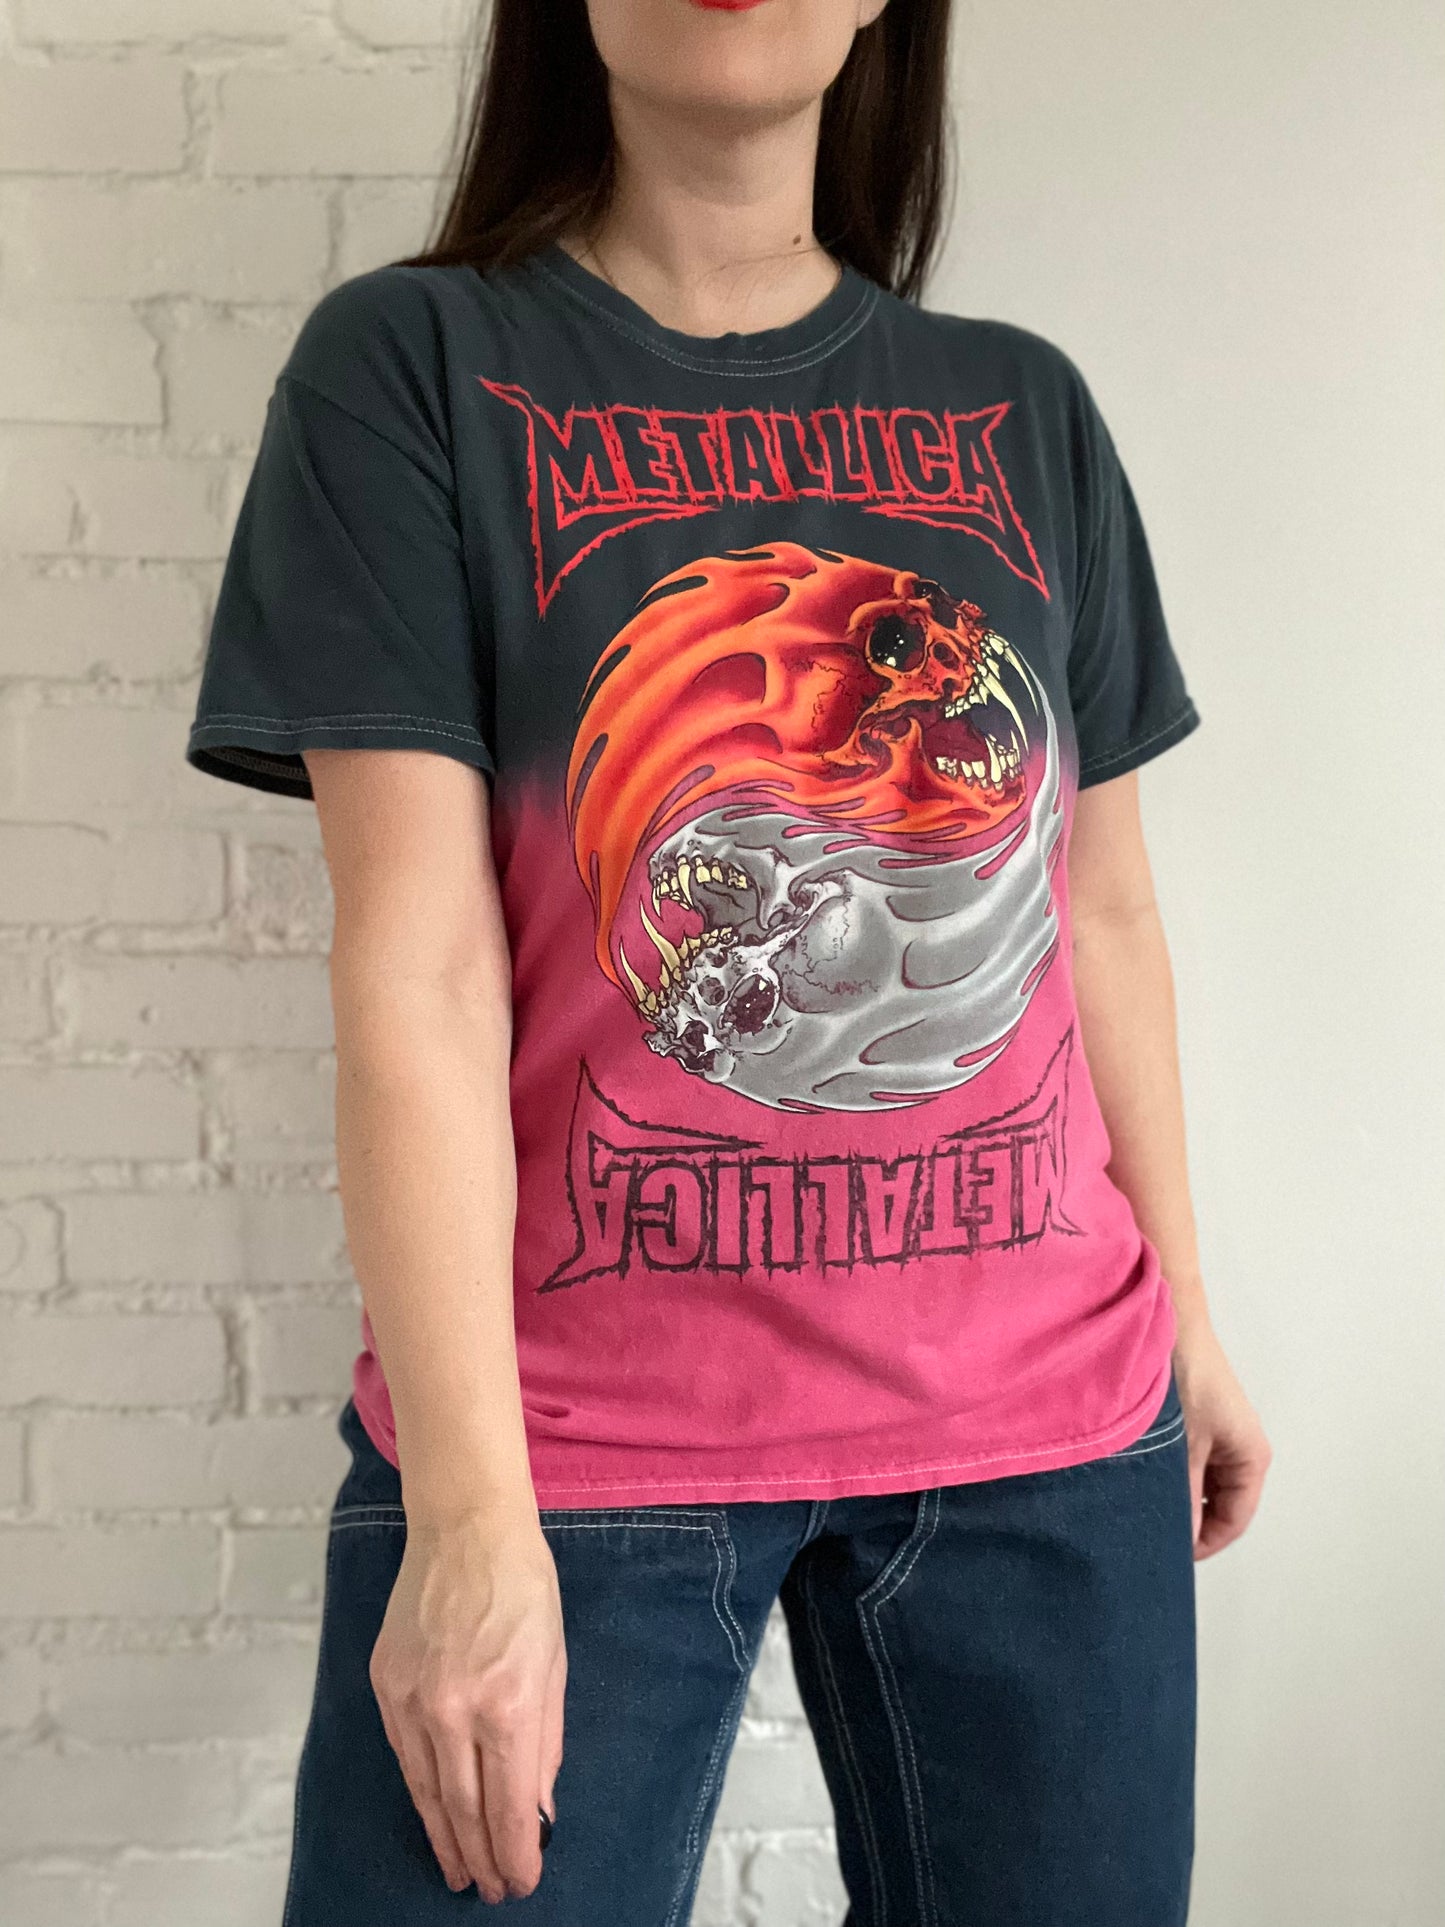 2000s Metallica Spitfire Monster T-shirt - Mens M